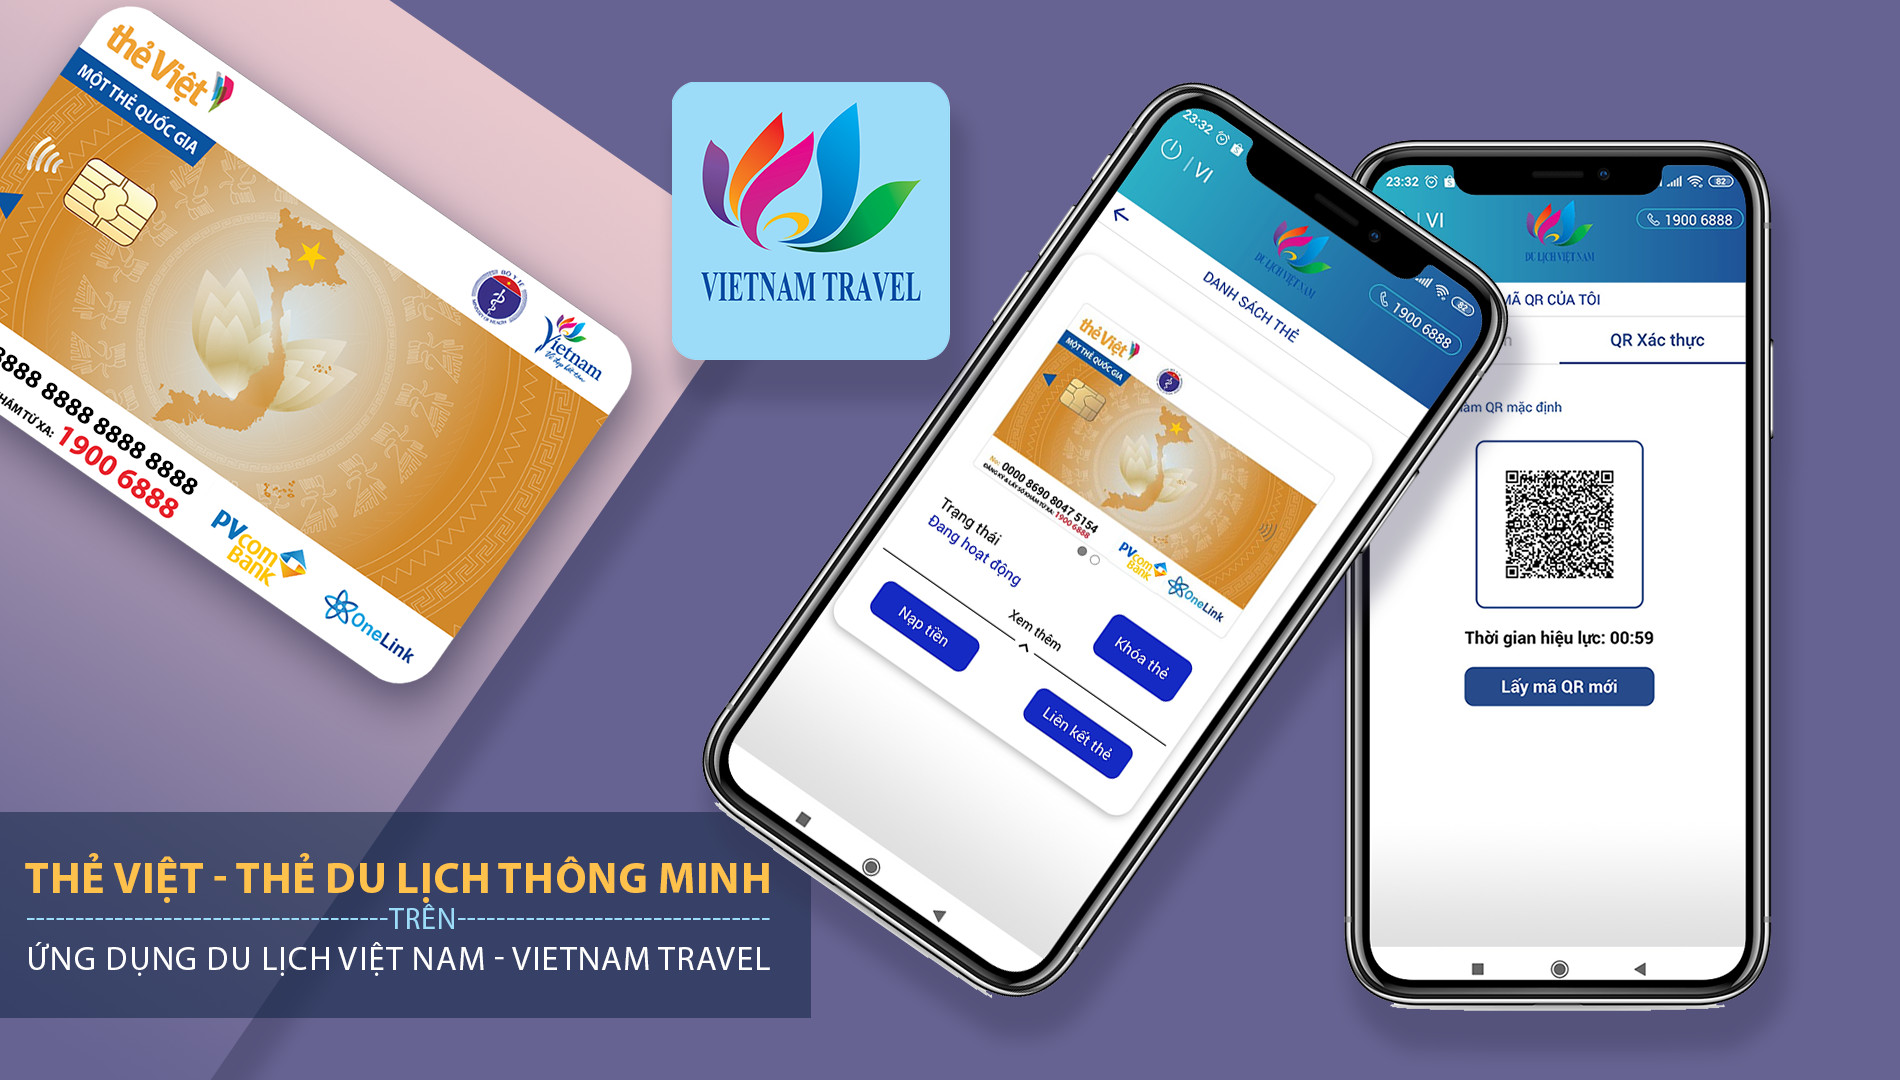 Quảng bá Thẻ Việt - Thẻ du lịch thông minh tại Hội chợ Du lịch quốc tế TP. Hồ Chí Minh (ITE HCMC 2022)